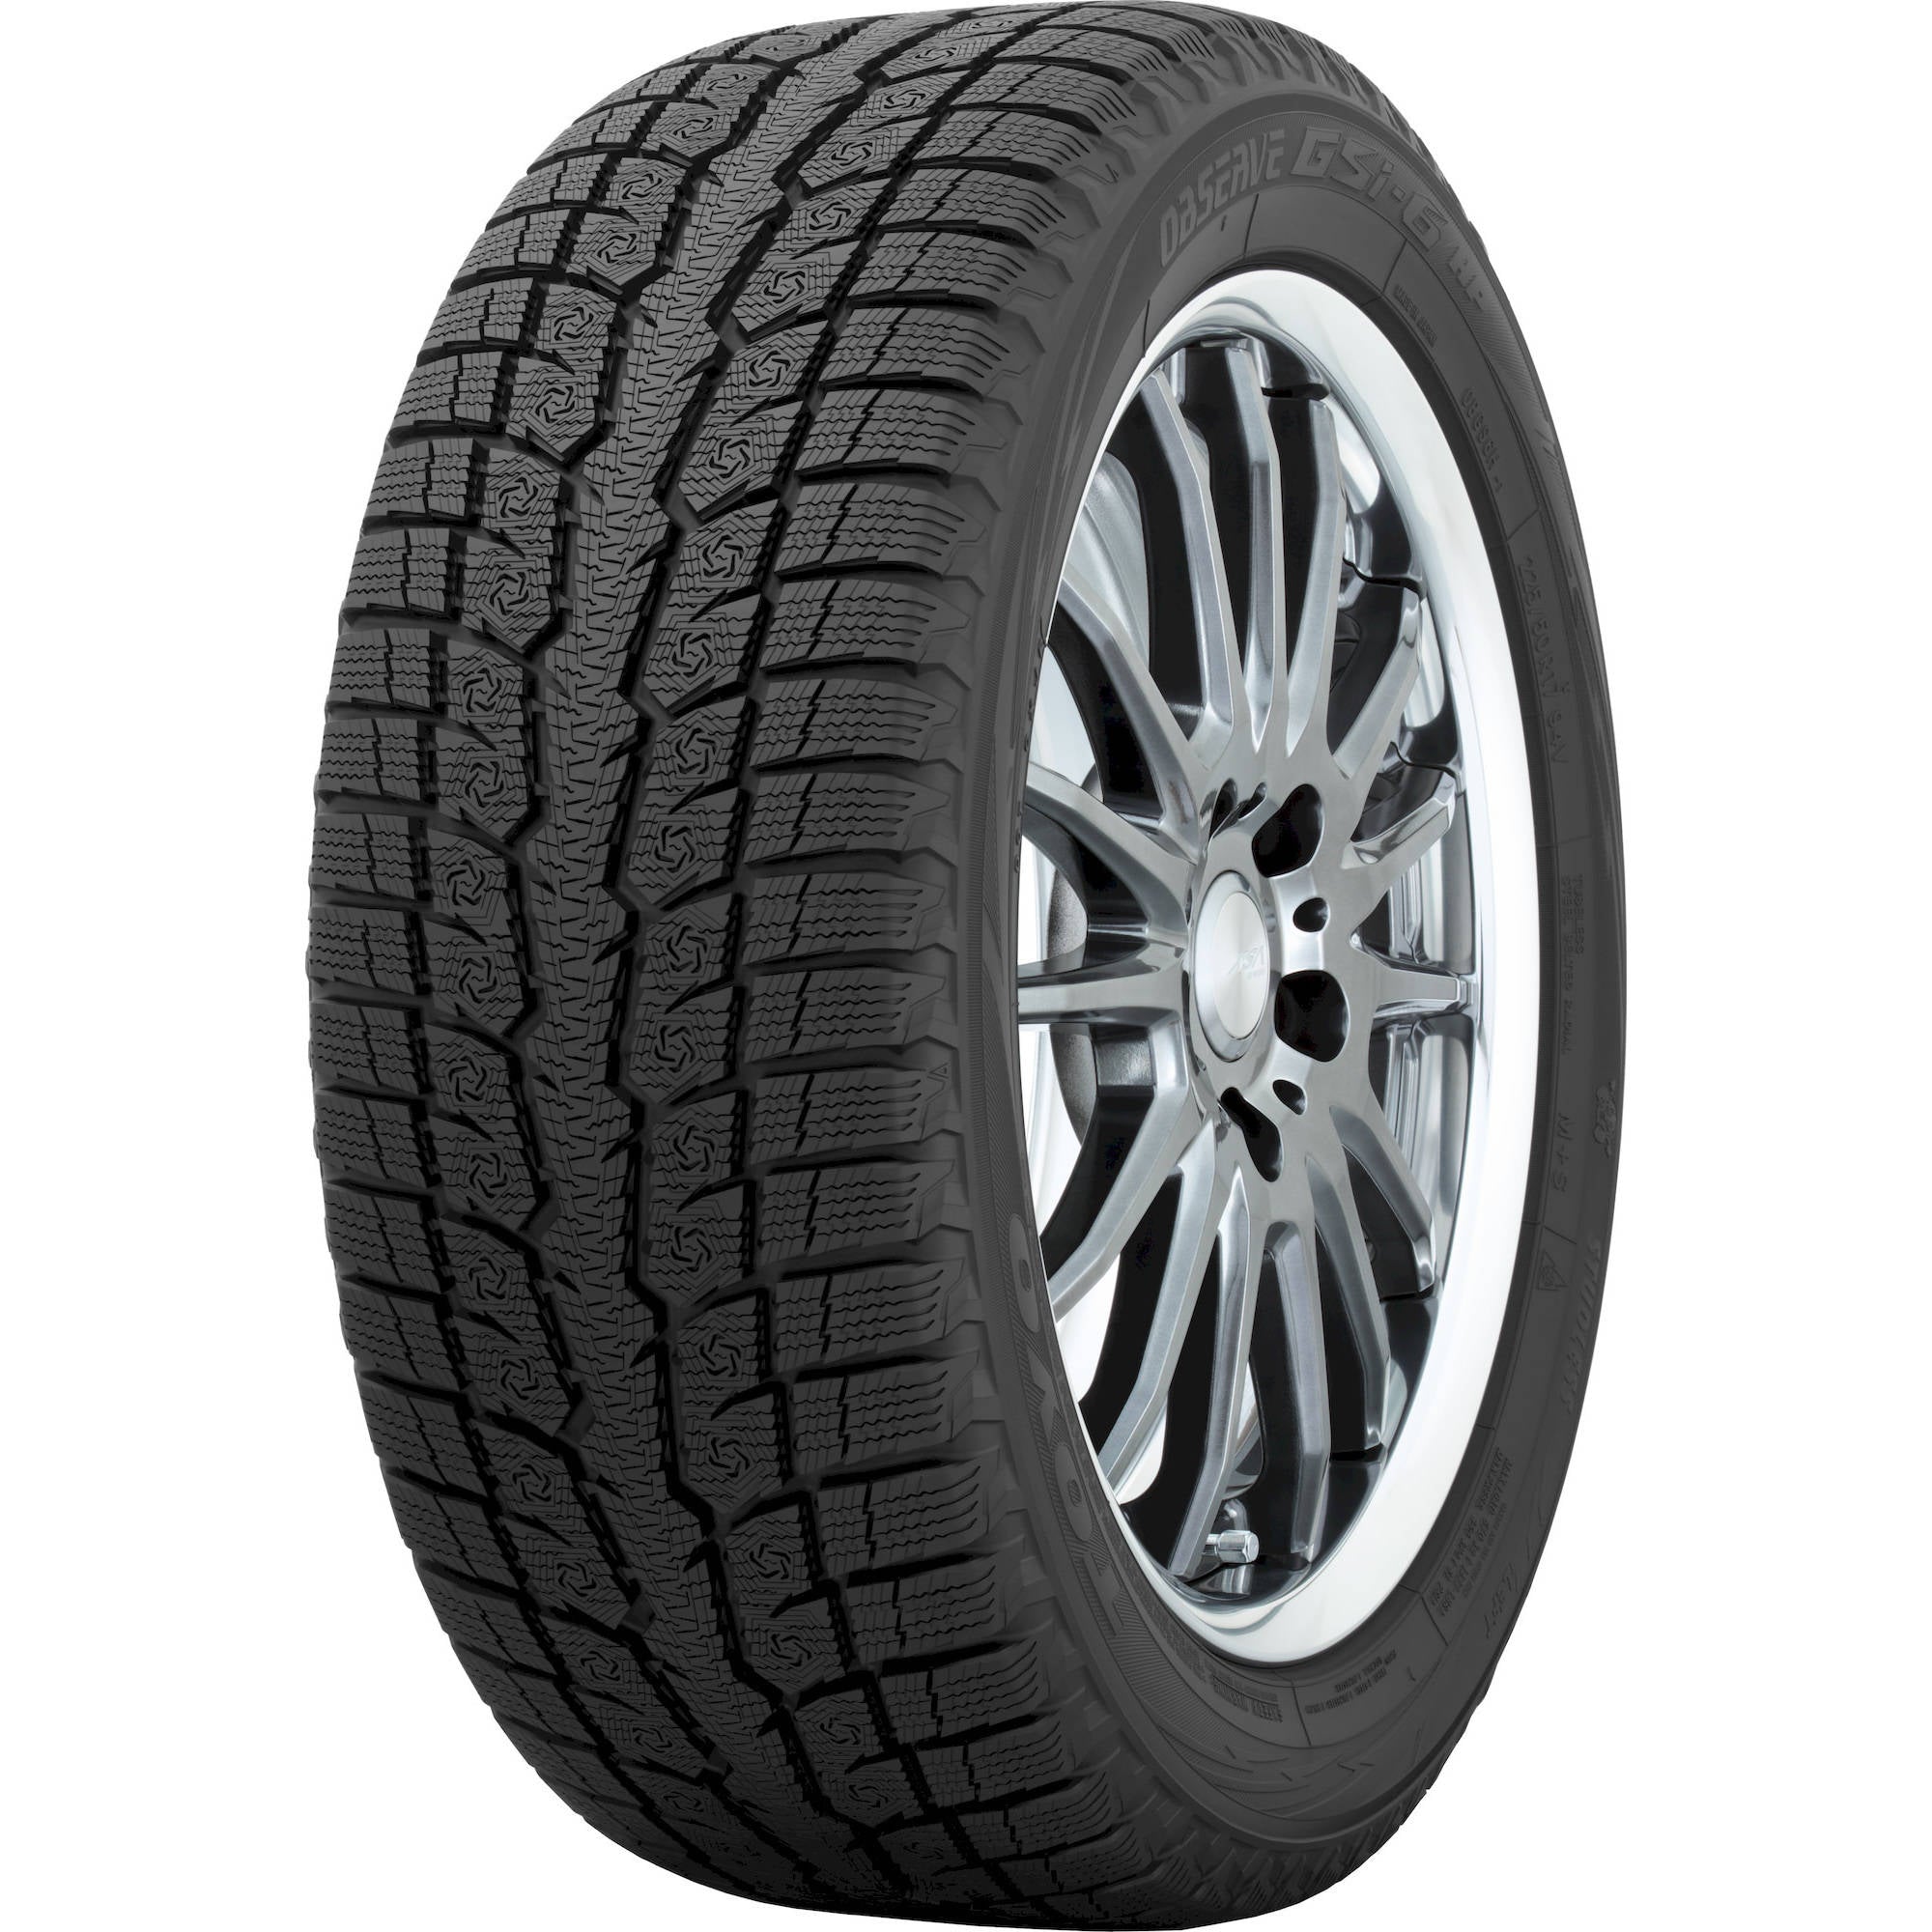 TOYO TIRES OBSERVE GSI-6 195/55R16 (24.4X7.7R 16) Tires